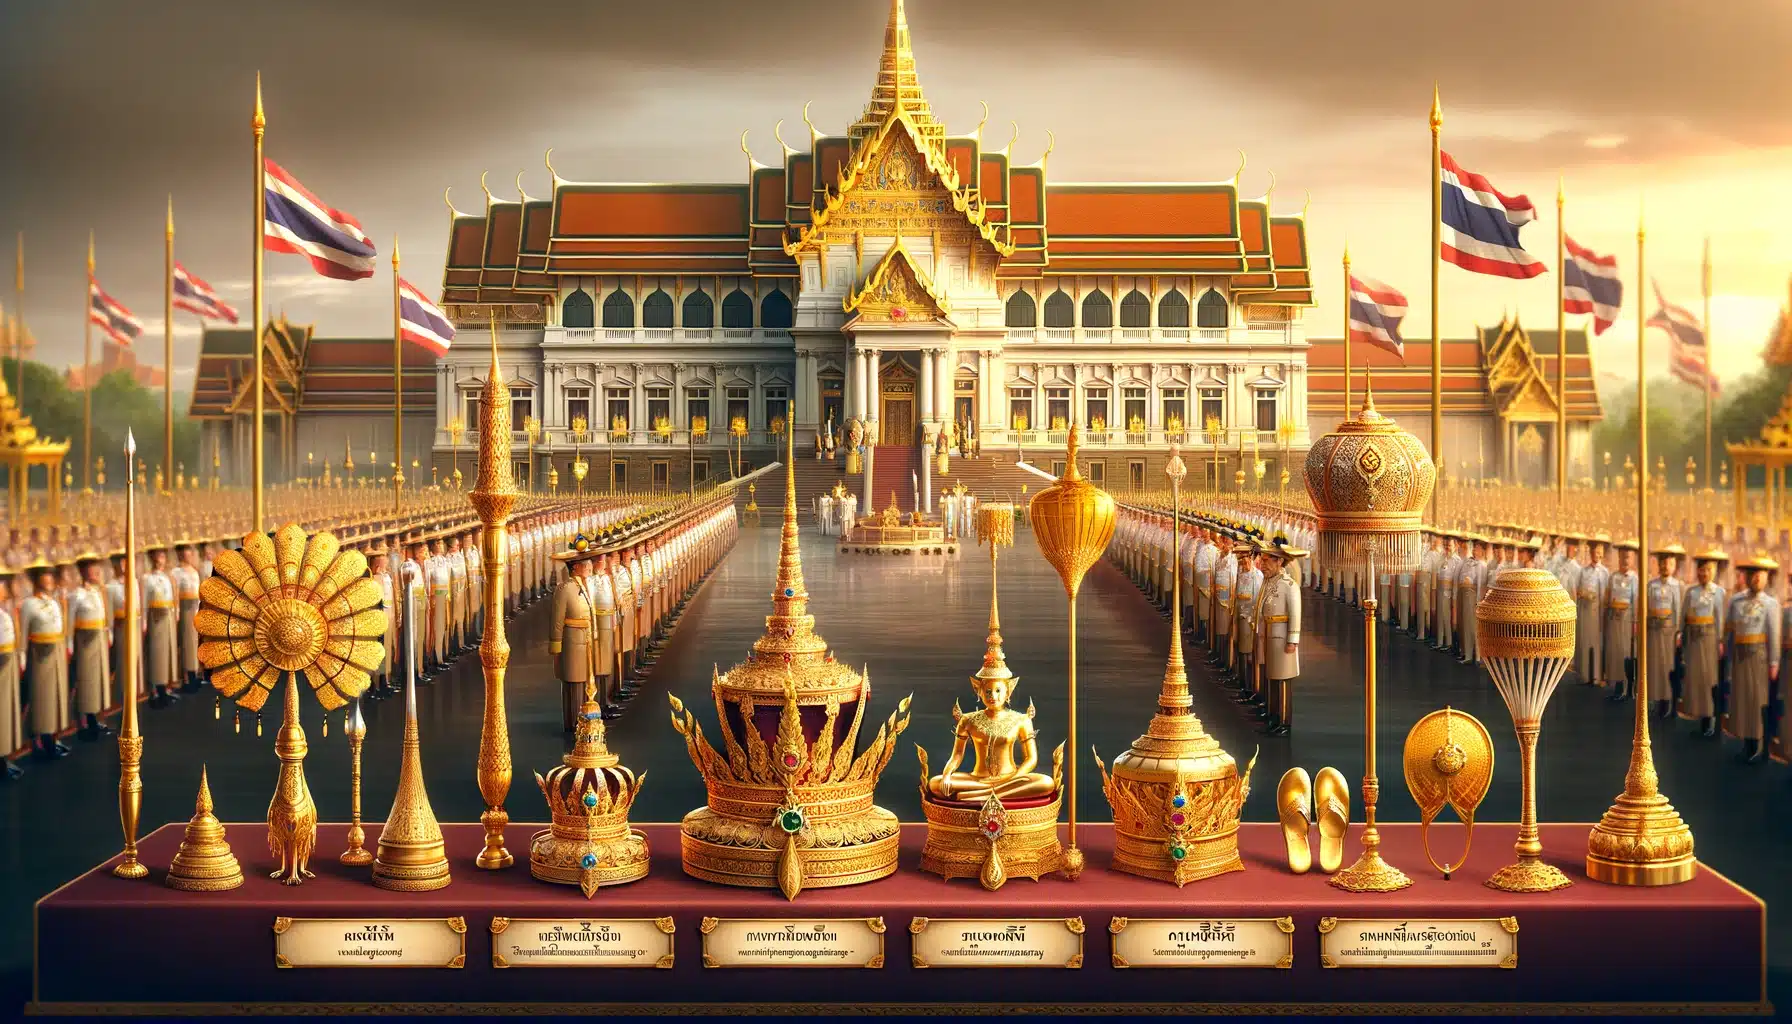 ภาพวาดแนวนอนแสดงเครื่องราชกกุธภัณฑ์ที่ใช้ในพระราชพิธีฉัตรมงคล ณ พระบรมมหาราชวัง มีพระบรมมหาราชวังประดับด้วยเครื่องประดับทองและธงชาติไทย ในเบื้องหน้ามีเครื่องราชกกุธภัณฑ์ทั้งห้า ได้แก่ พระมหาพิชัยมงกุฎ พระแสงขรรค์ชัยศรี ธารพระกร วาลวิชนี และฉลองพระบาทเชิงงอน มีคำบรรยายสั้น ๆ เป็นภาษาไทย ผู้คนในชุดไทยดั้งเดิมอยู่ในภาพเพื่อเน้นย้ำความสำคัญของพิธี